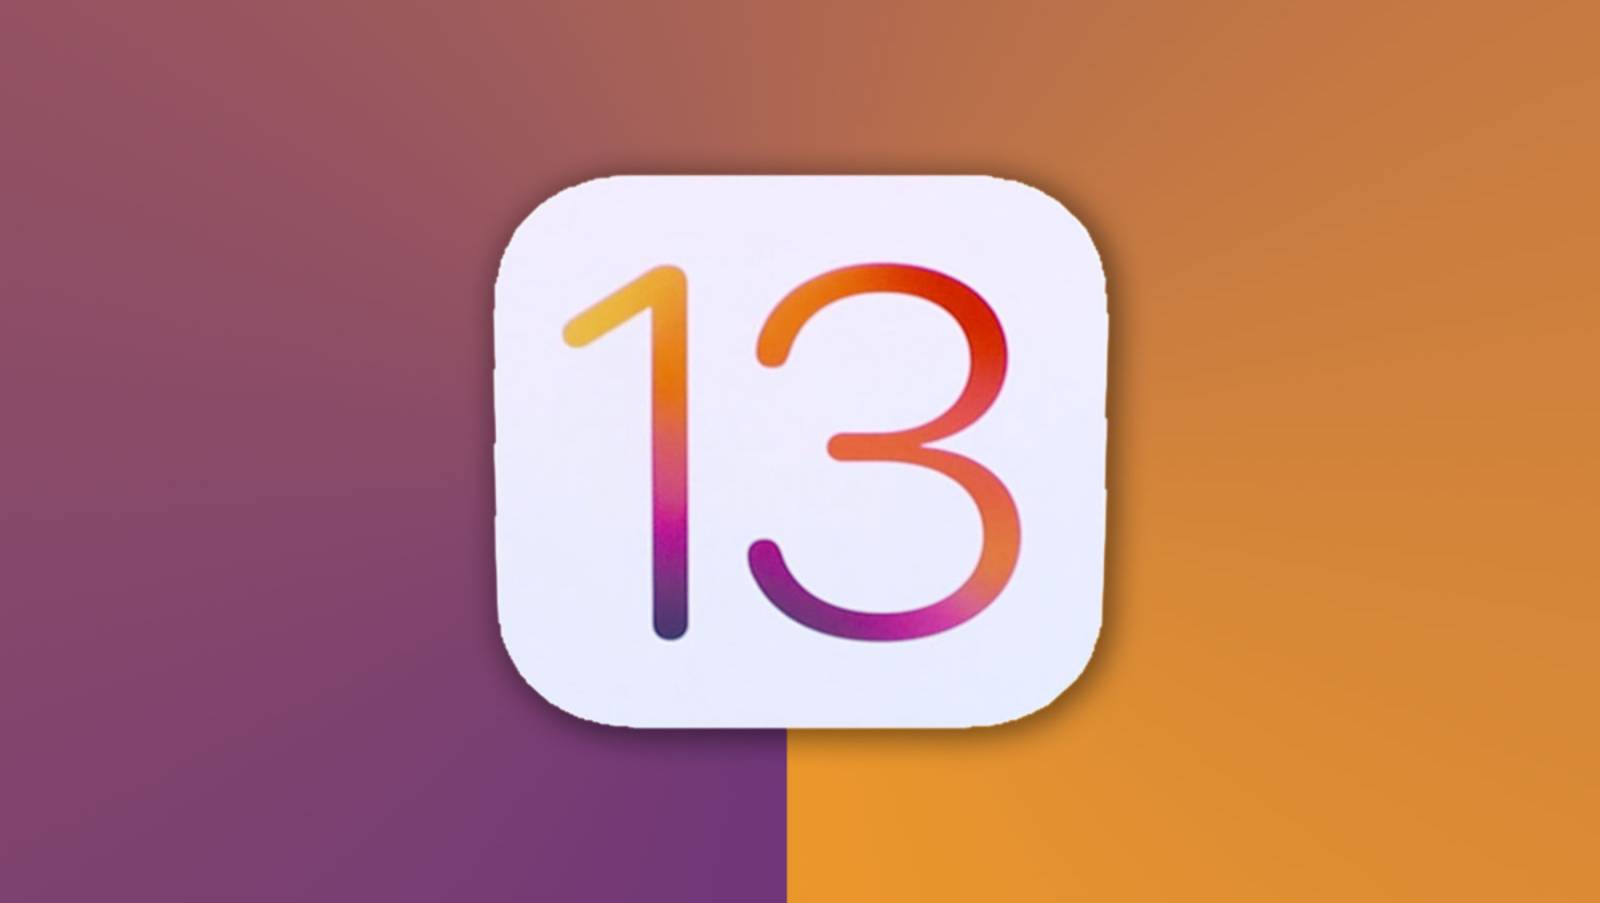 iOS 13 Public Beta 3